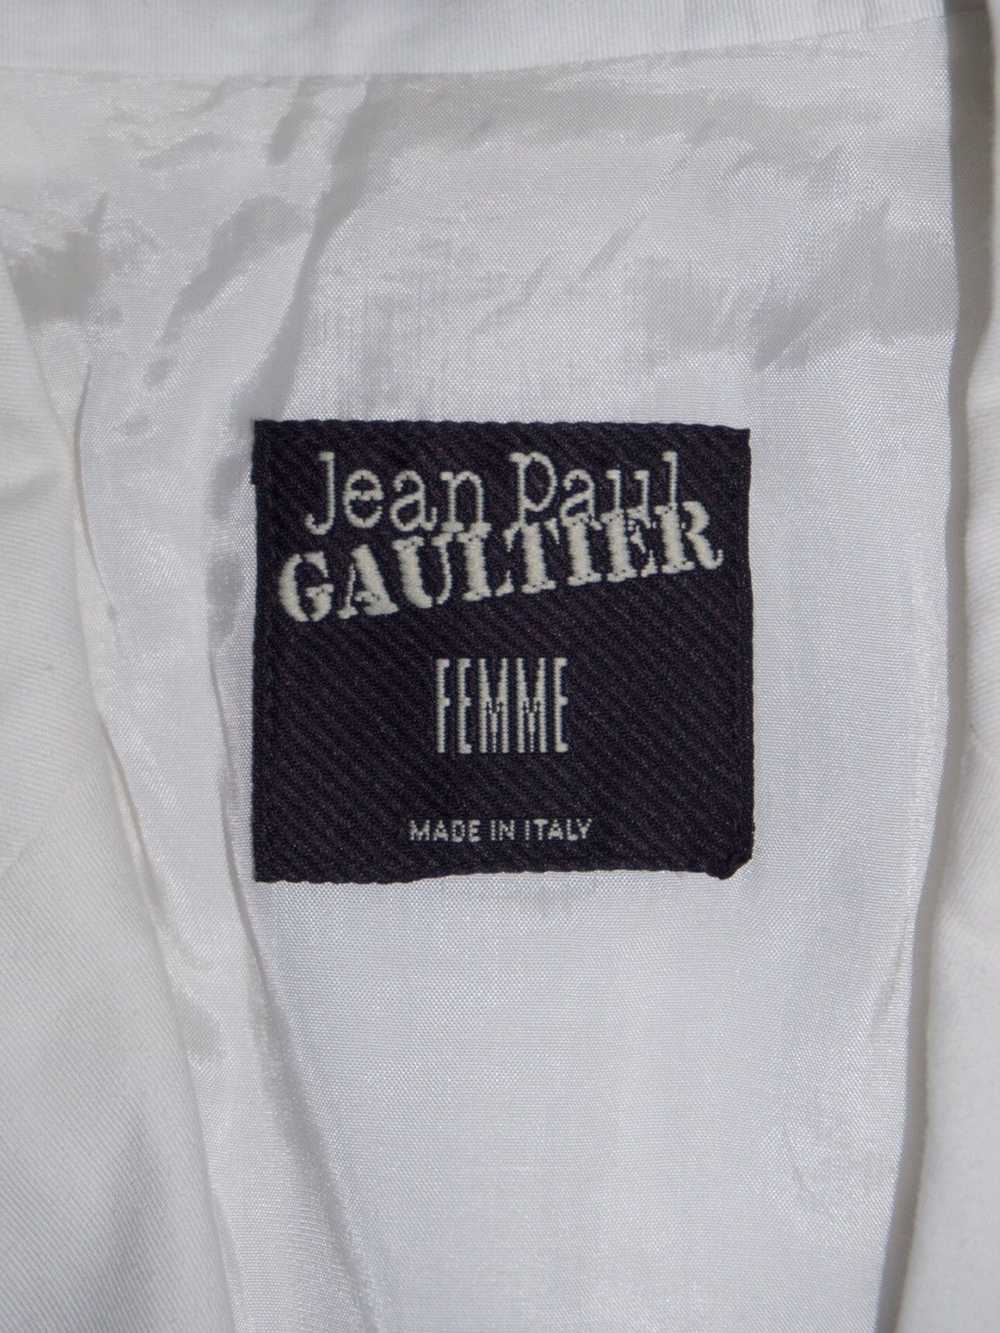 Jean Paul Gaultier Jean Paul gaultier cargo - image 5